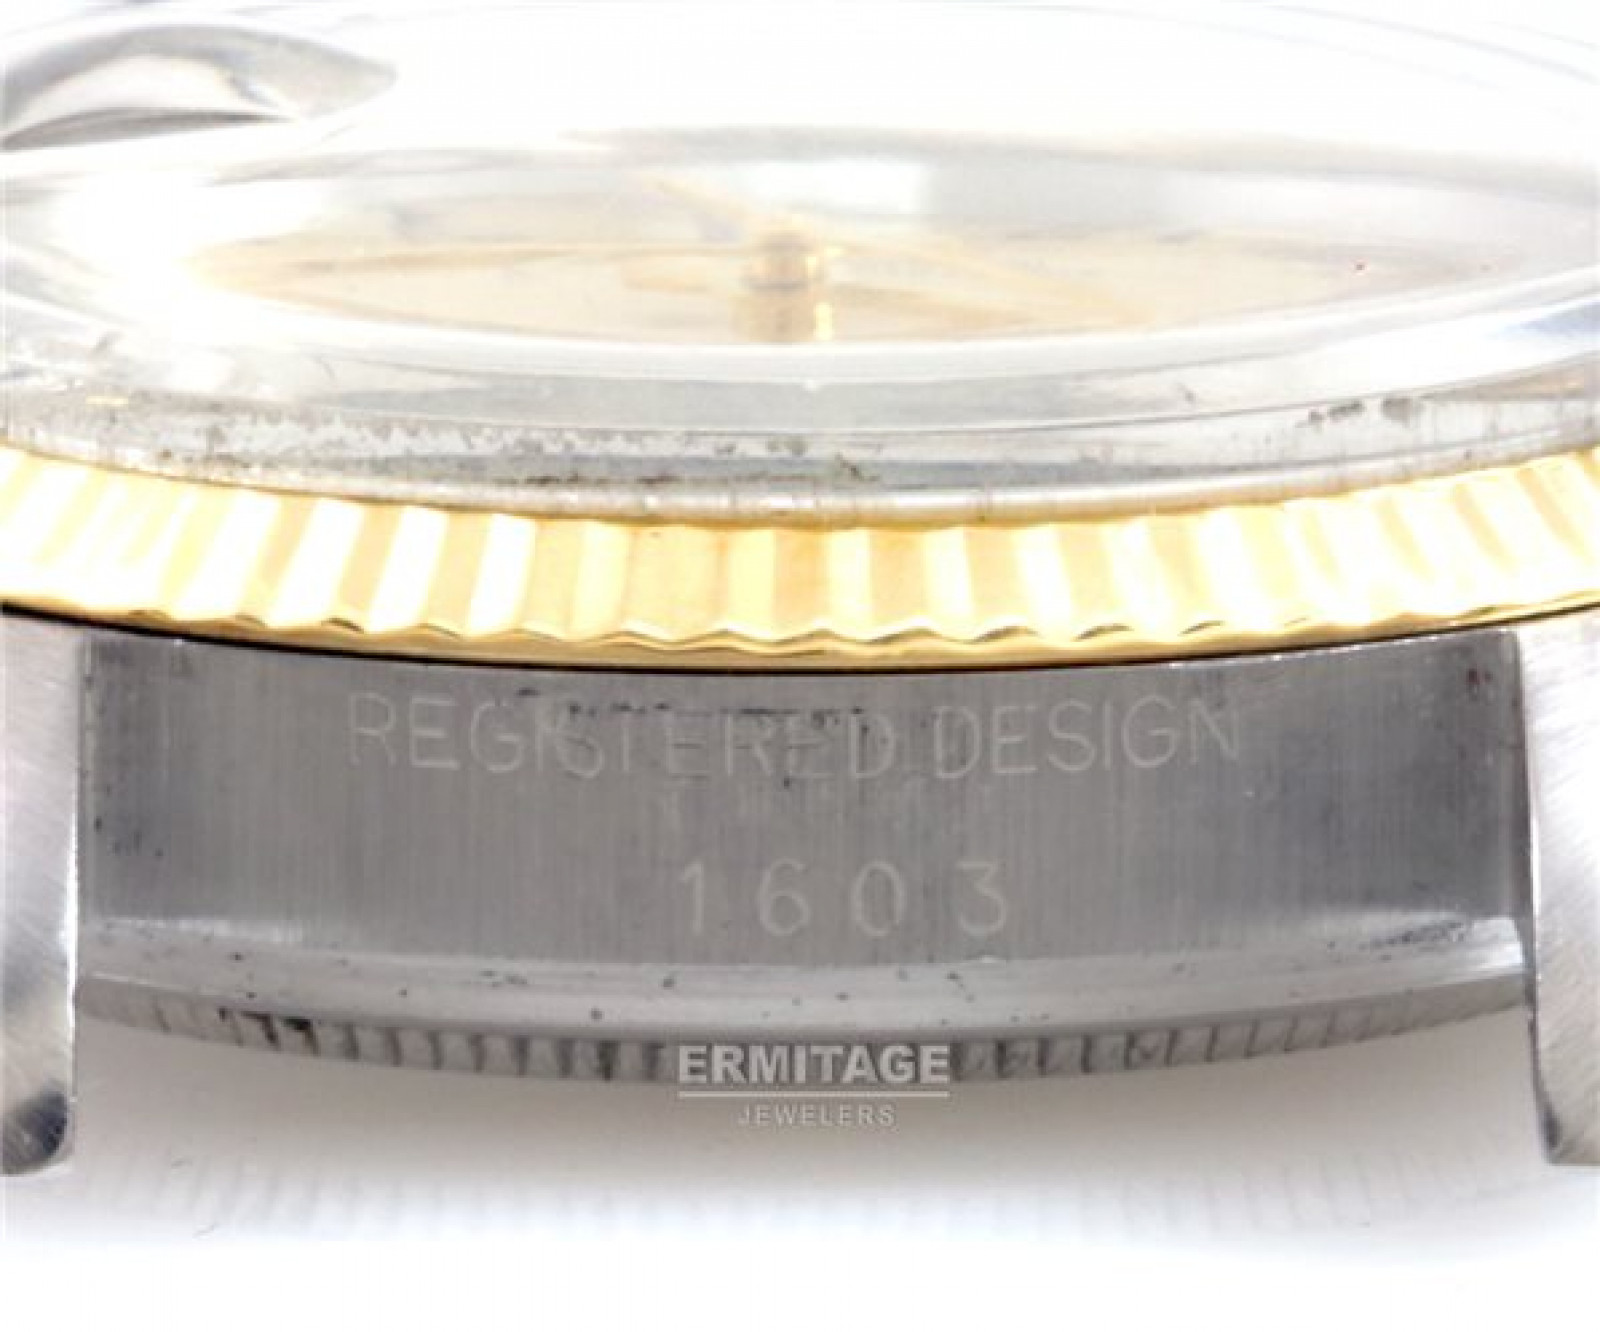 Vintage Rolex Datejust 1603 Steel